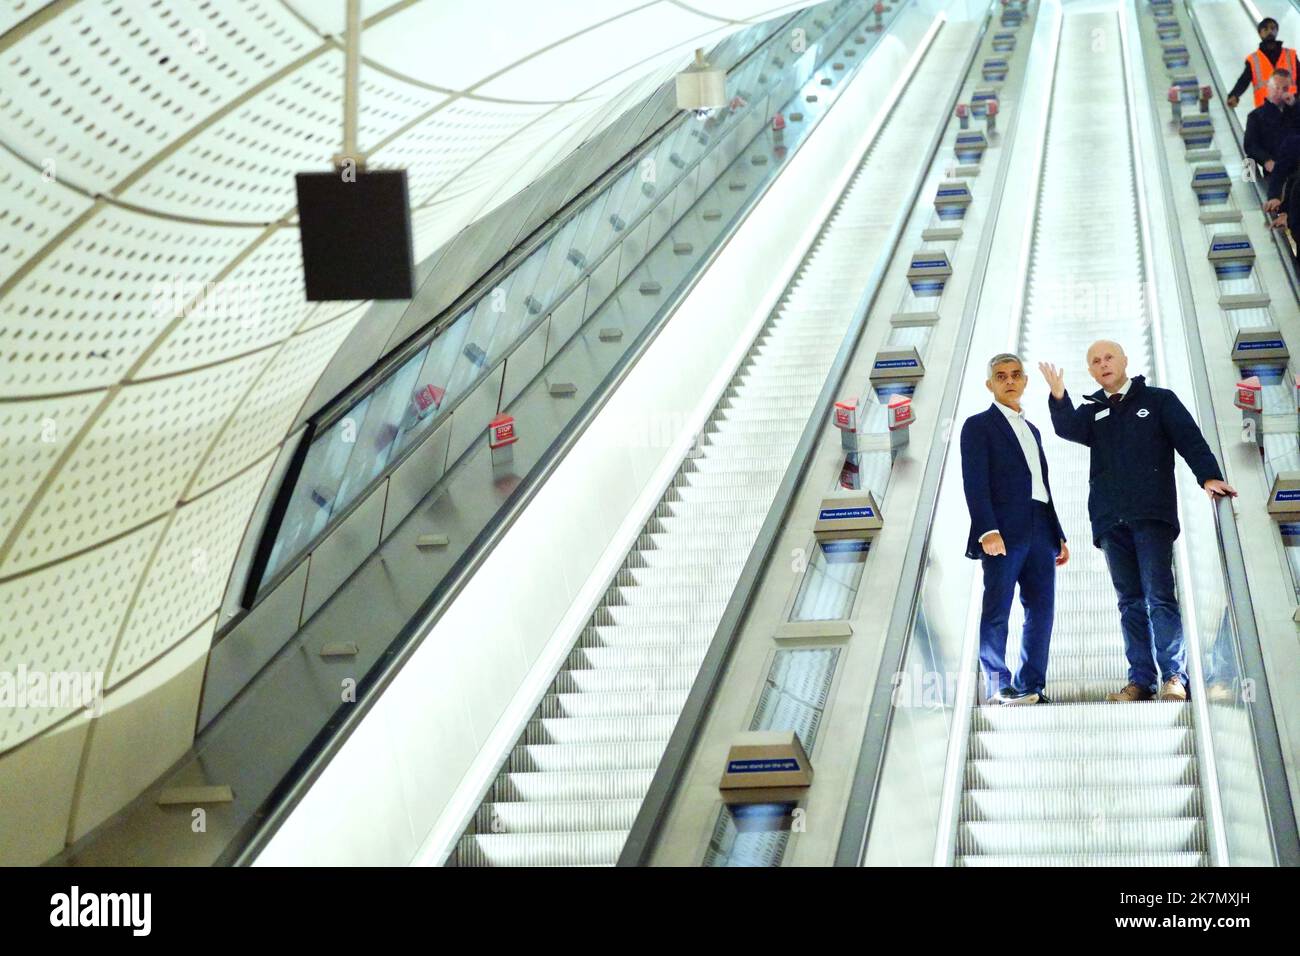 Der Londoner Bürgermeister Sadiq Khan und der TFL-Kommissar Andy Byford fahren eine Rolltreppe entlang, während sie den Bahnhof der Bond Street Elizabeth Line im Zentrum von London besichtigen, der nach mehreren Verzögerungen am 24. Oktober eröffnet werden soll. Bilddatum: Dienstag, 18. Oktober 2022. Stockfoto